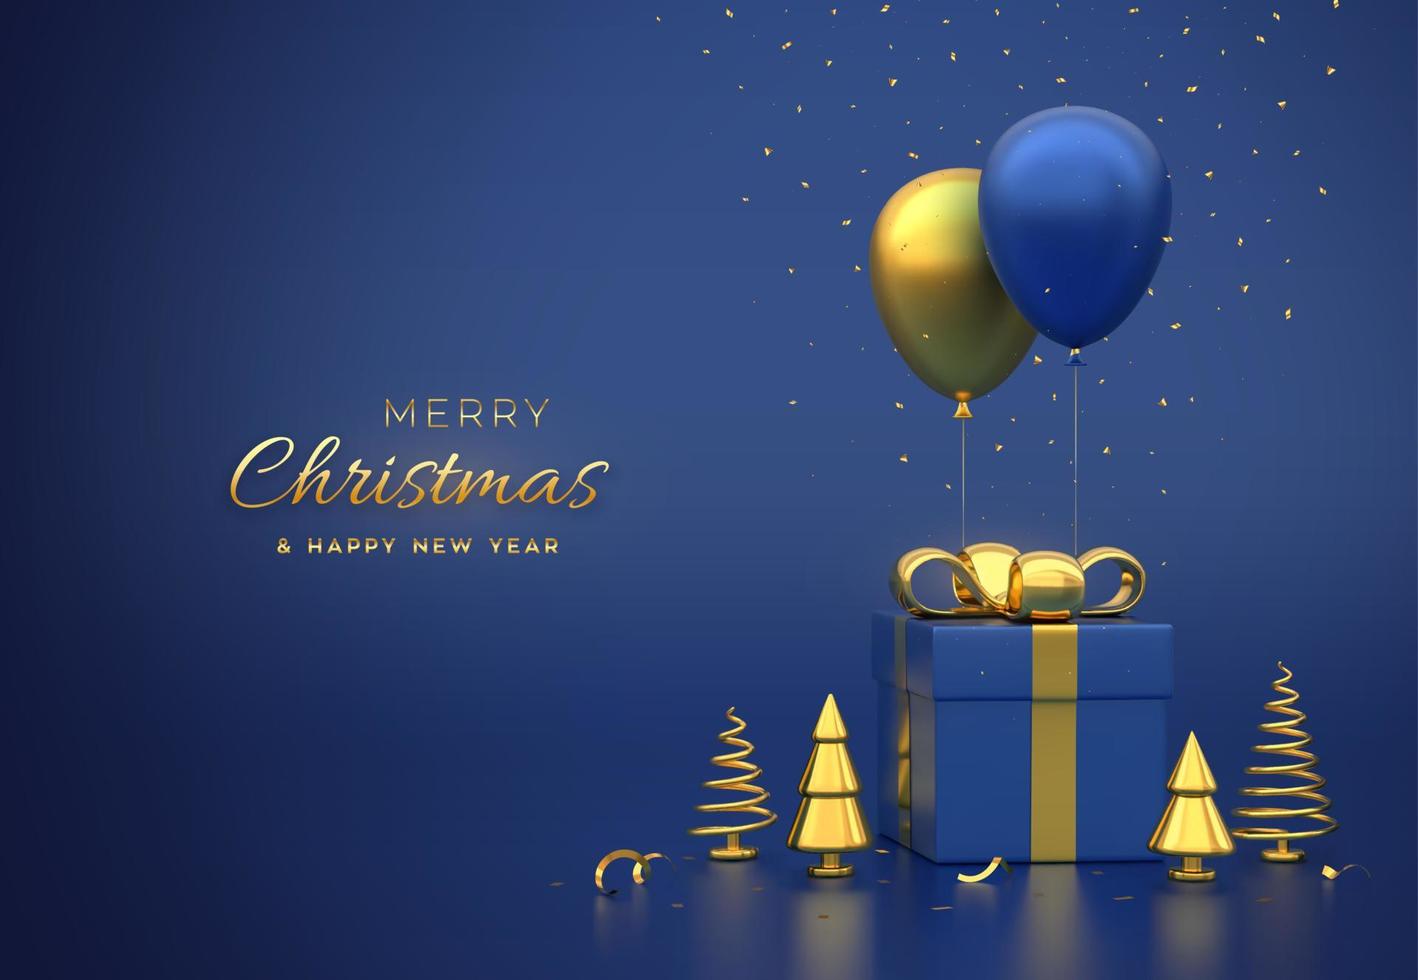 caja de regalo con arco dorado y pino metálico dorado o abetos en forma de cono de abeto, globos festivos de helio y confeti que cae sobre fondo azul. feliz navidad tarjeta o pancarta. ilustración vectorial vector